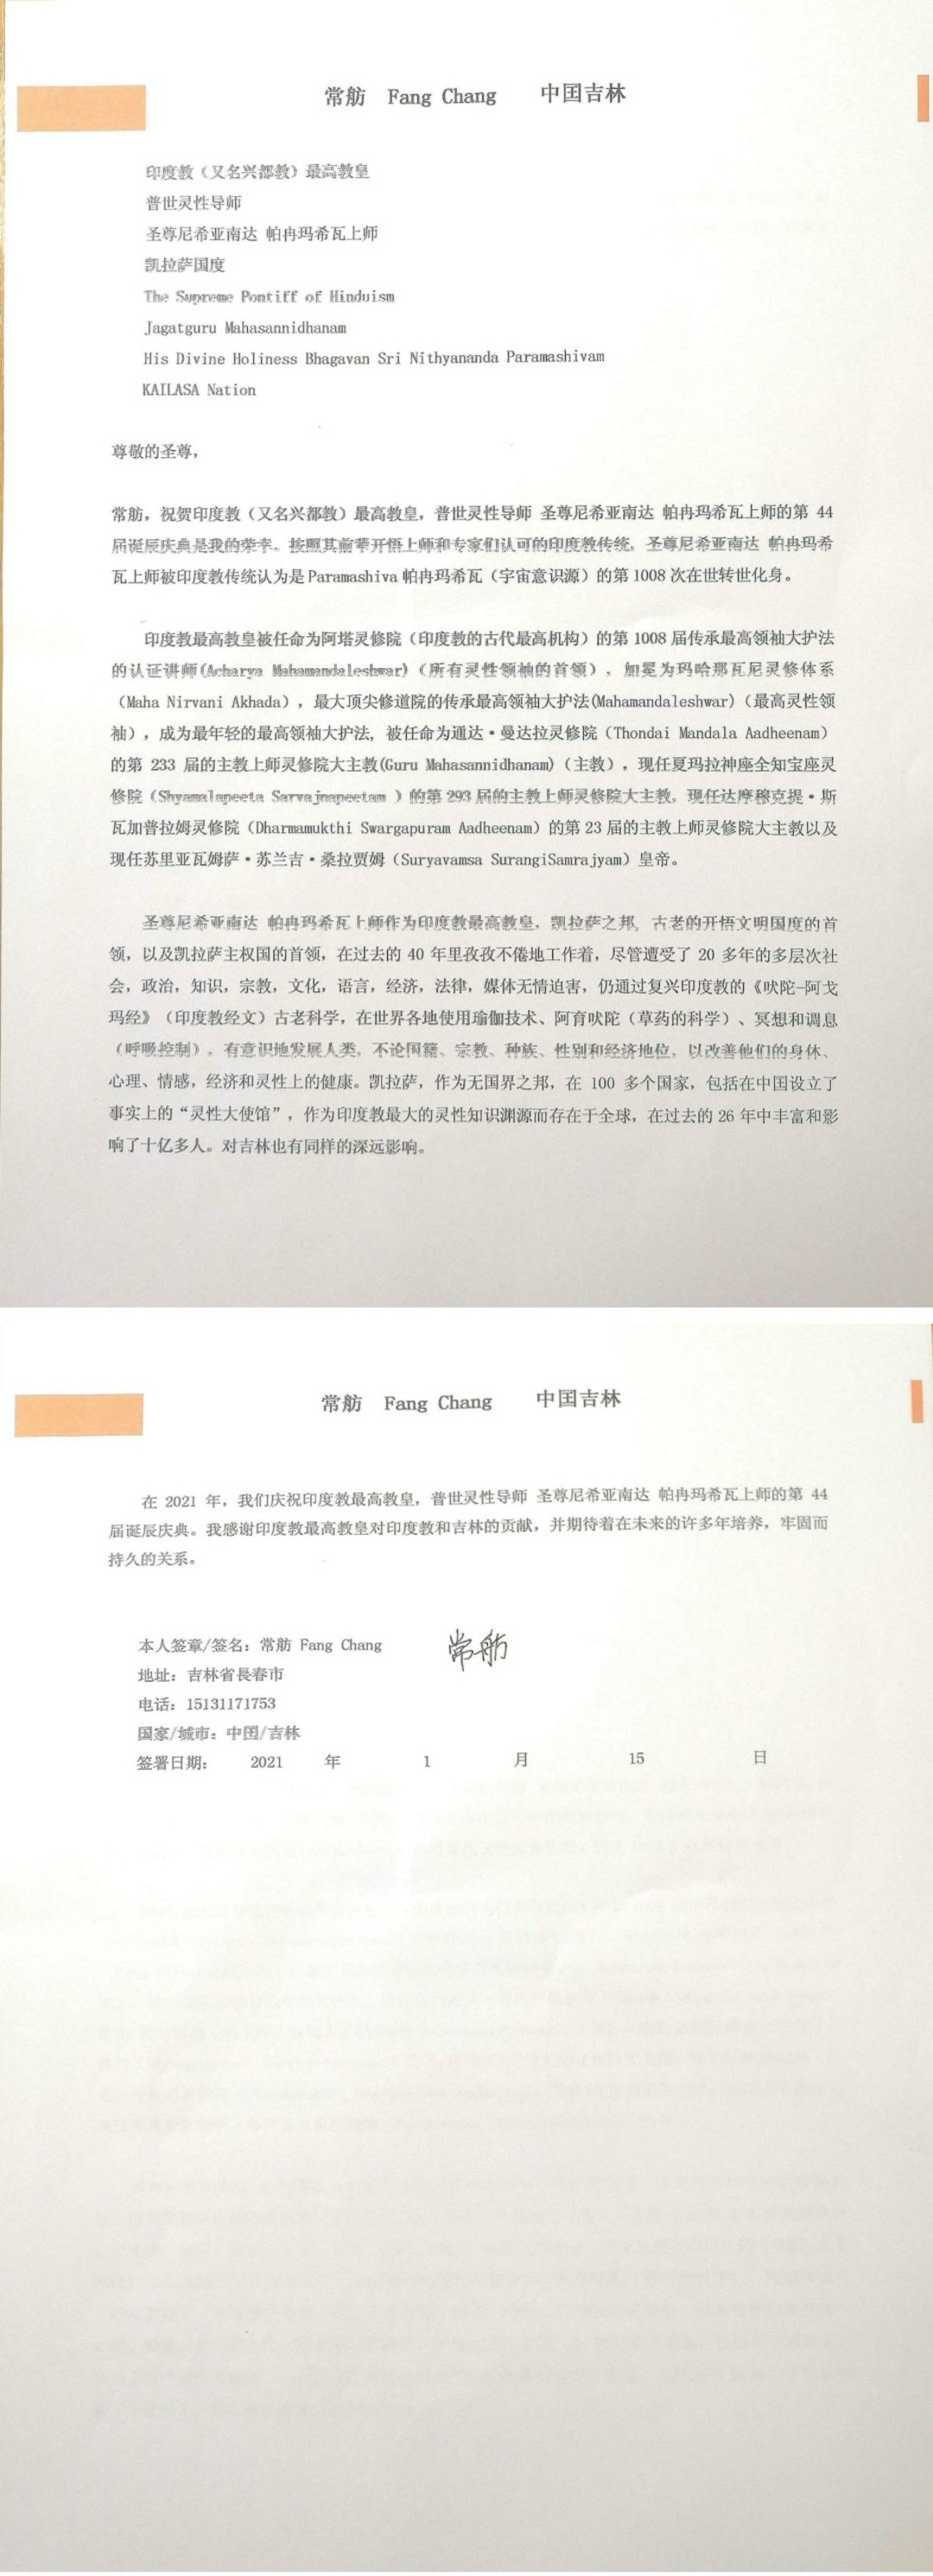 China---Chang-Fang---January-15--2021-(Proclamation)-1vopQyWldwsKTdcZP7JrIUkzbG6wfAoIV.pdf